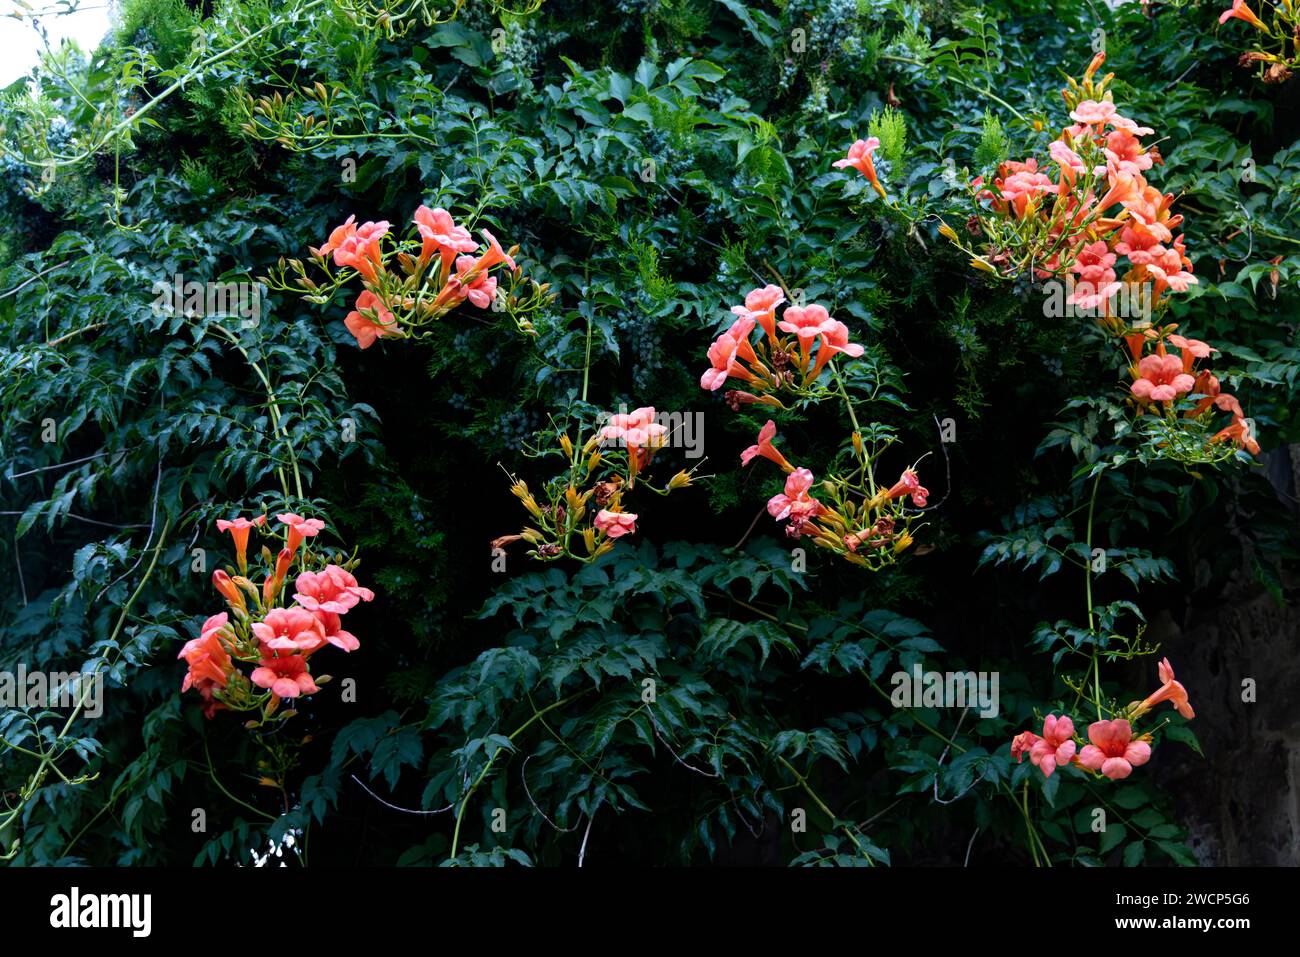 Immagini che catturano rose rosa circondate da foglie verdi lussureggianti Foto Stock